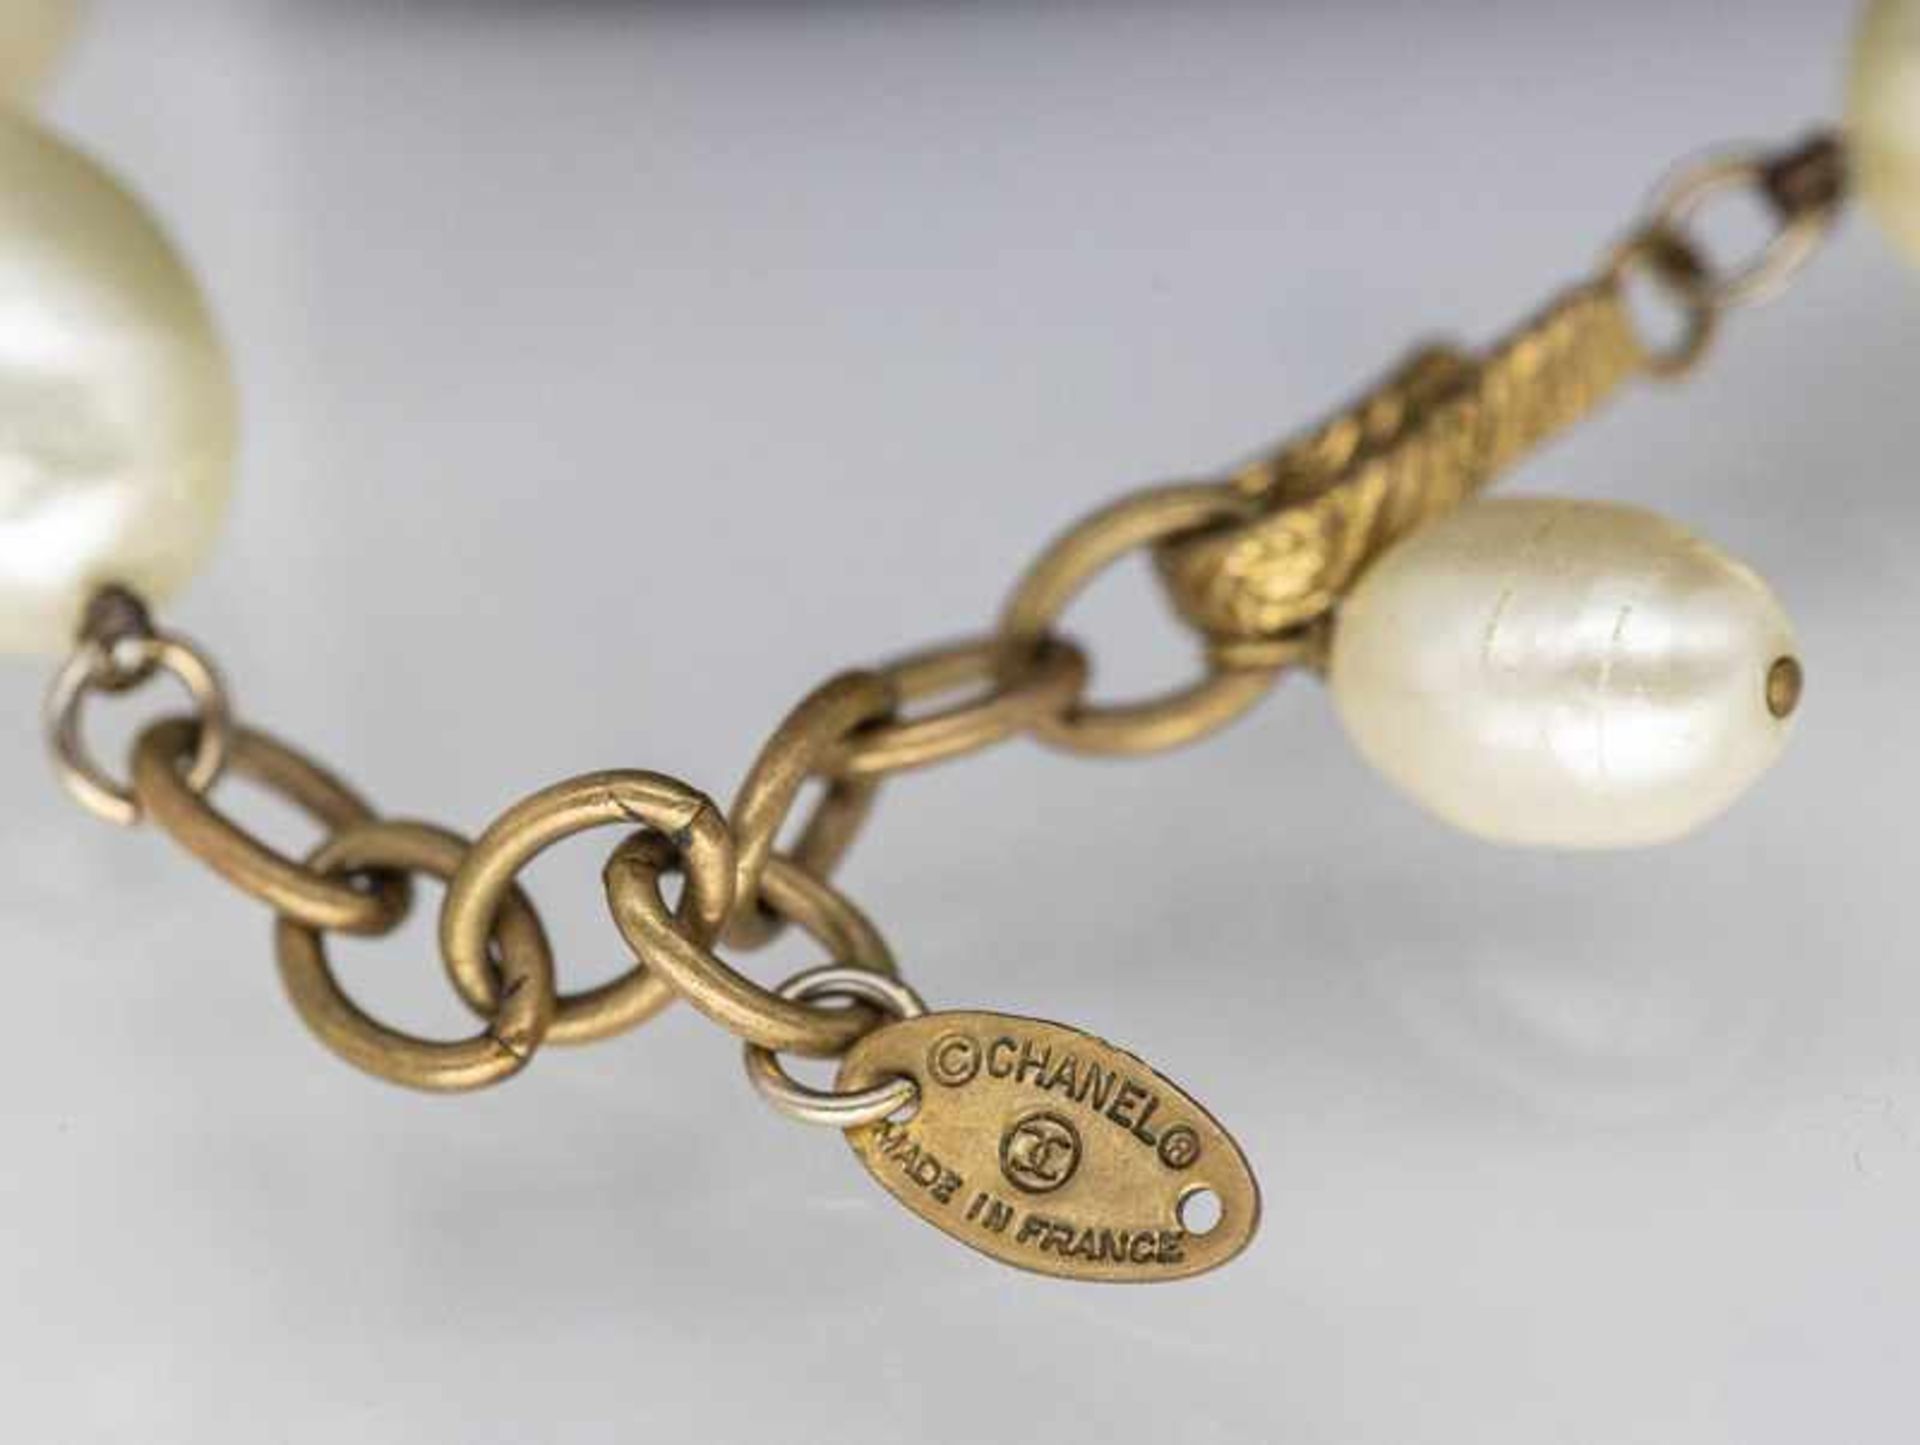 Chanel-Modeschmuckkette mit Perlenimitationen, Paris, 80- Jahre. - Bild 2 aus 2